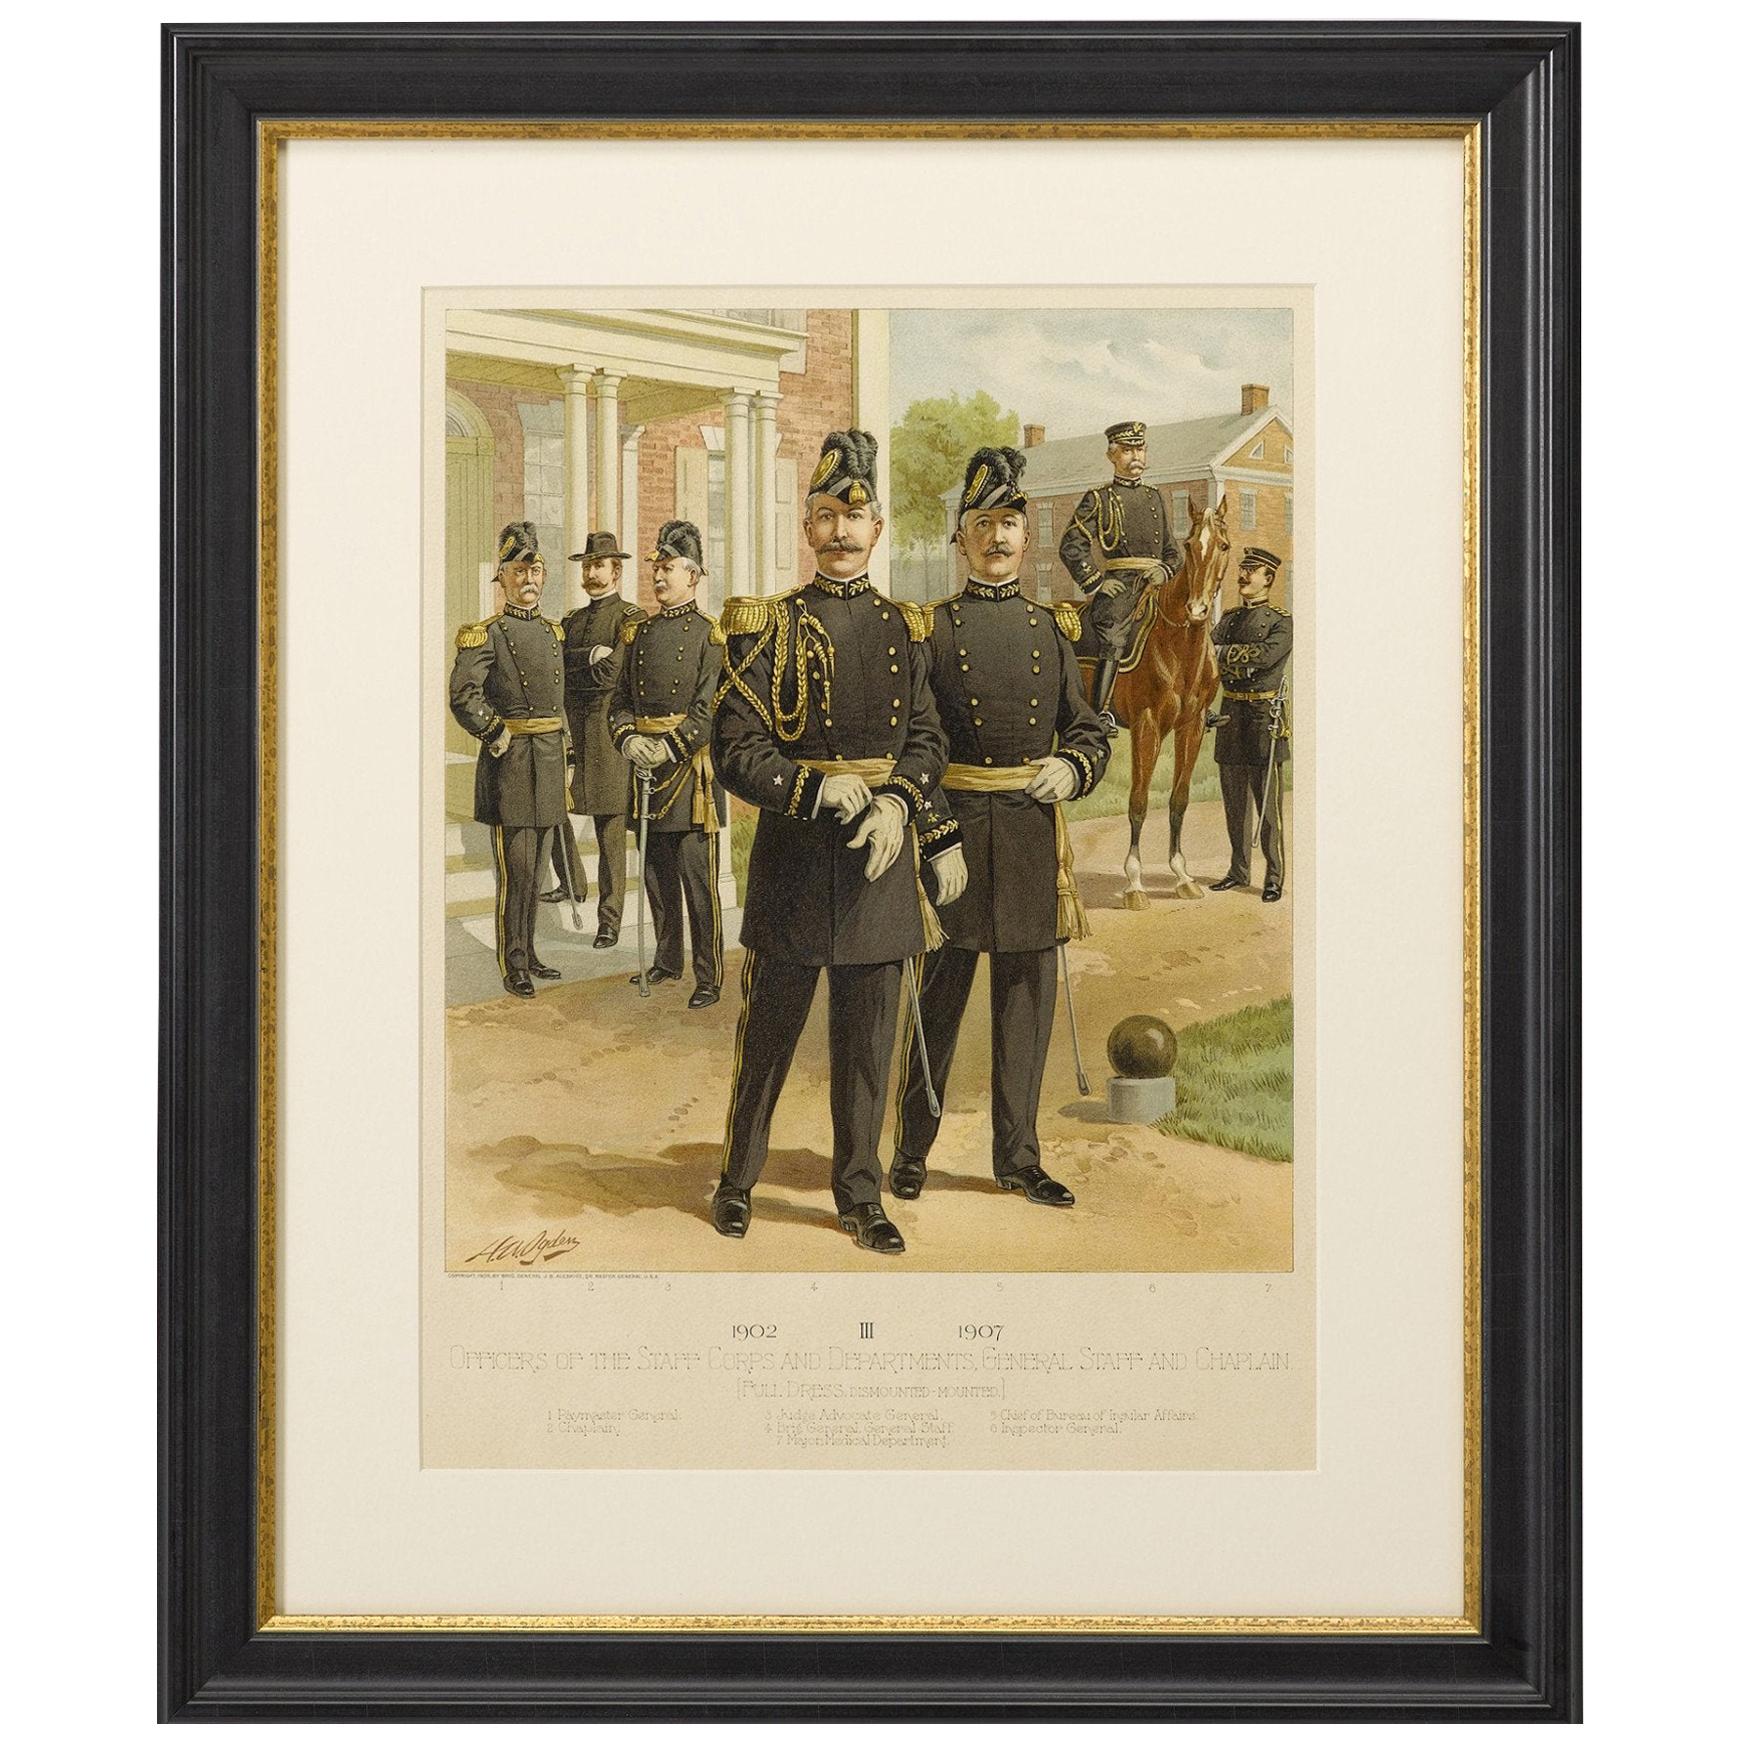 Original „1902-1907 Offiziere des Stabskorps“ von C. Ogden, 1908